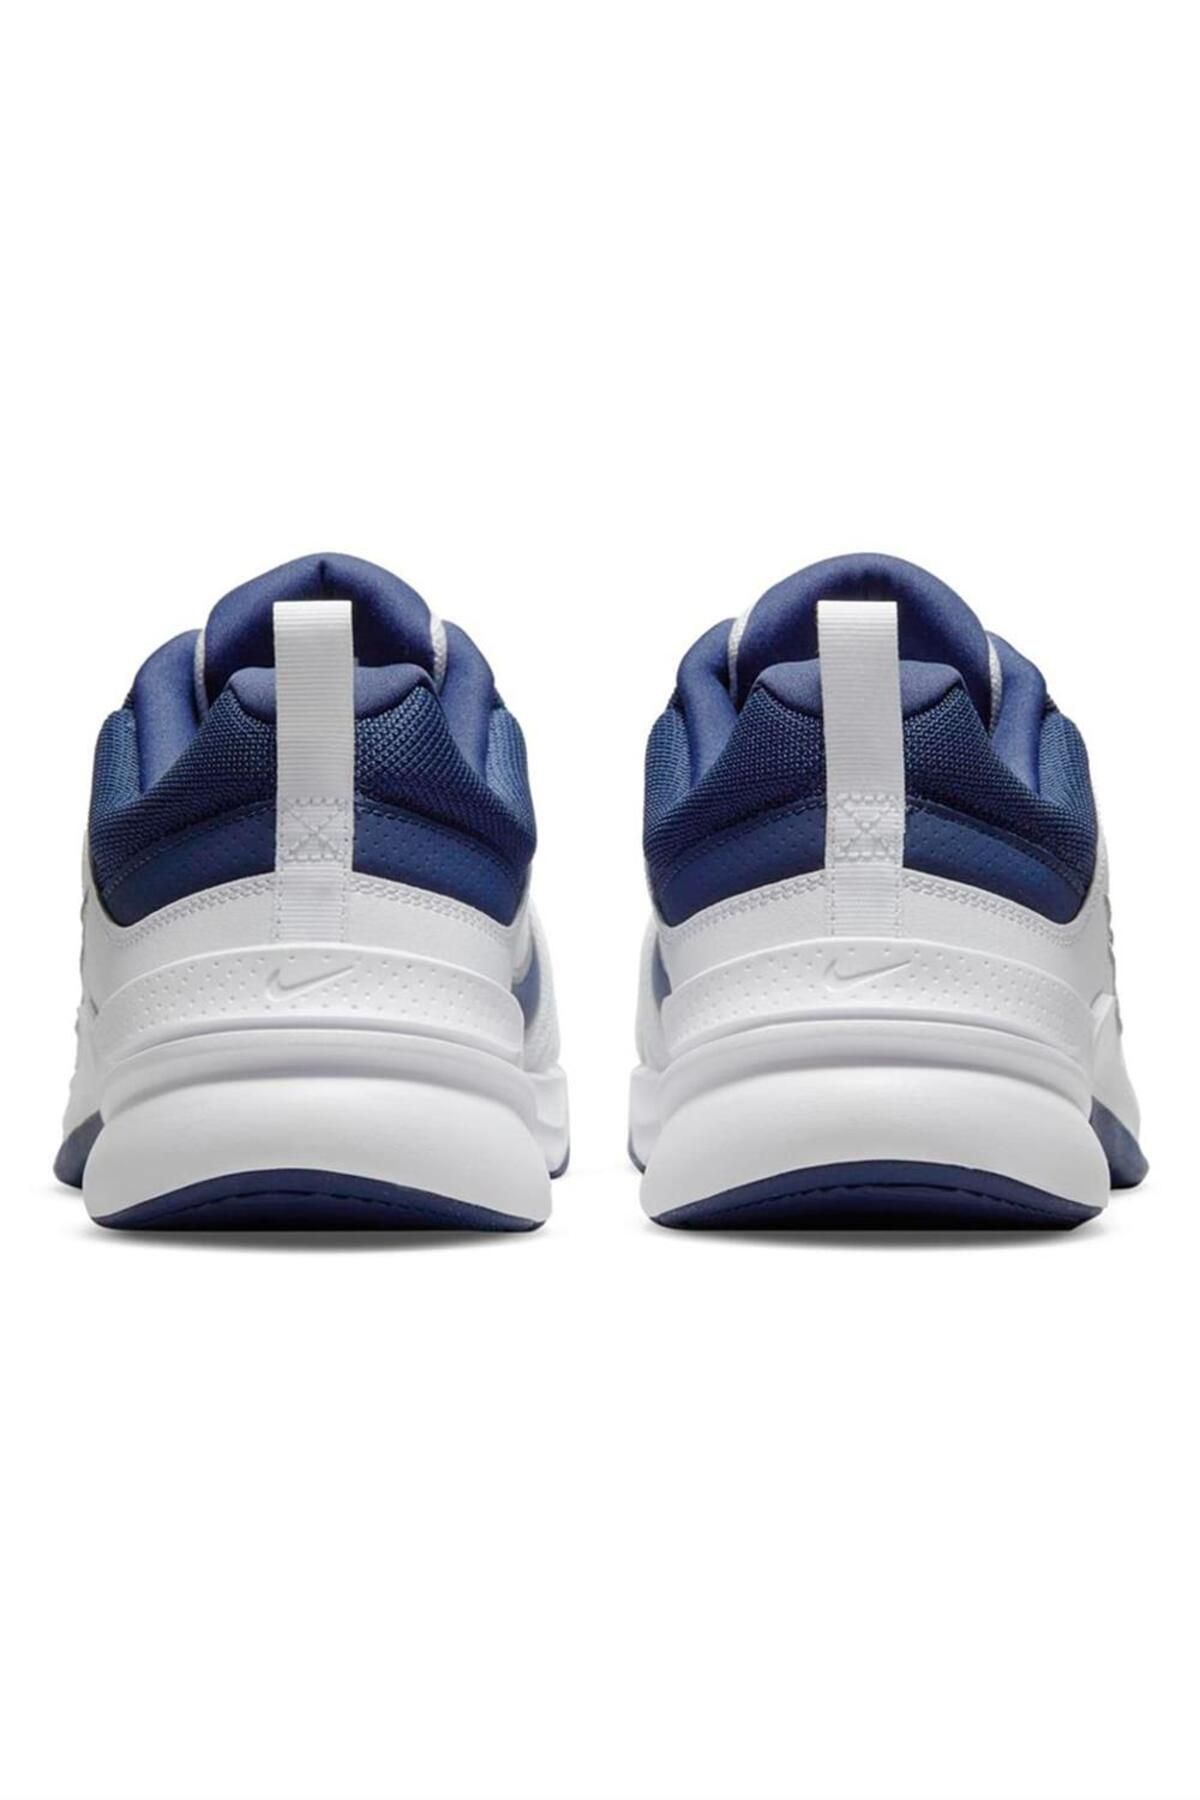 Nike Defyallday Beyaz Unisex Spor Ayakkabı Dj1196-100